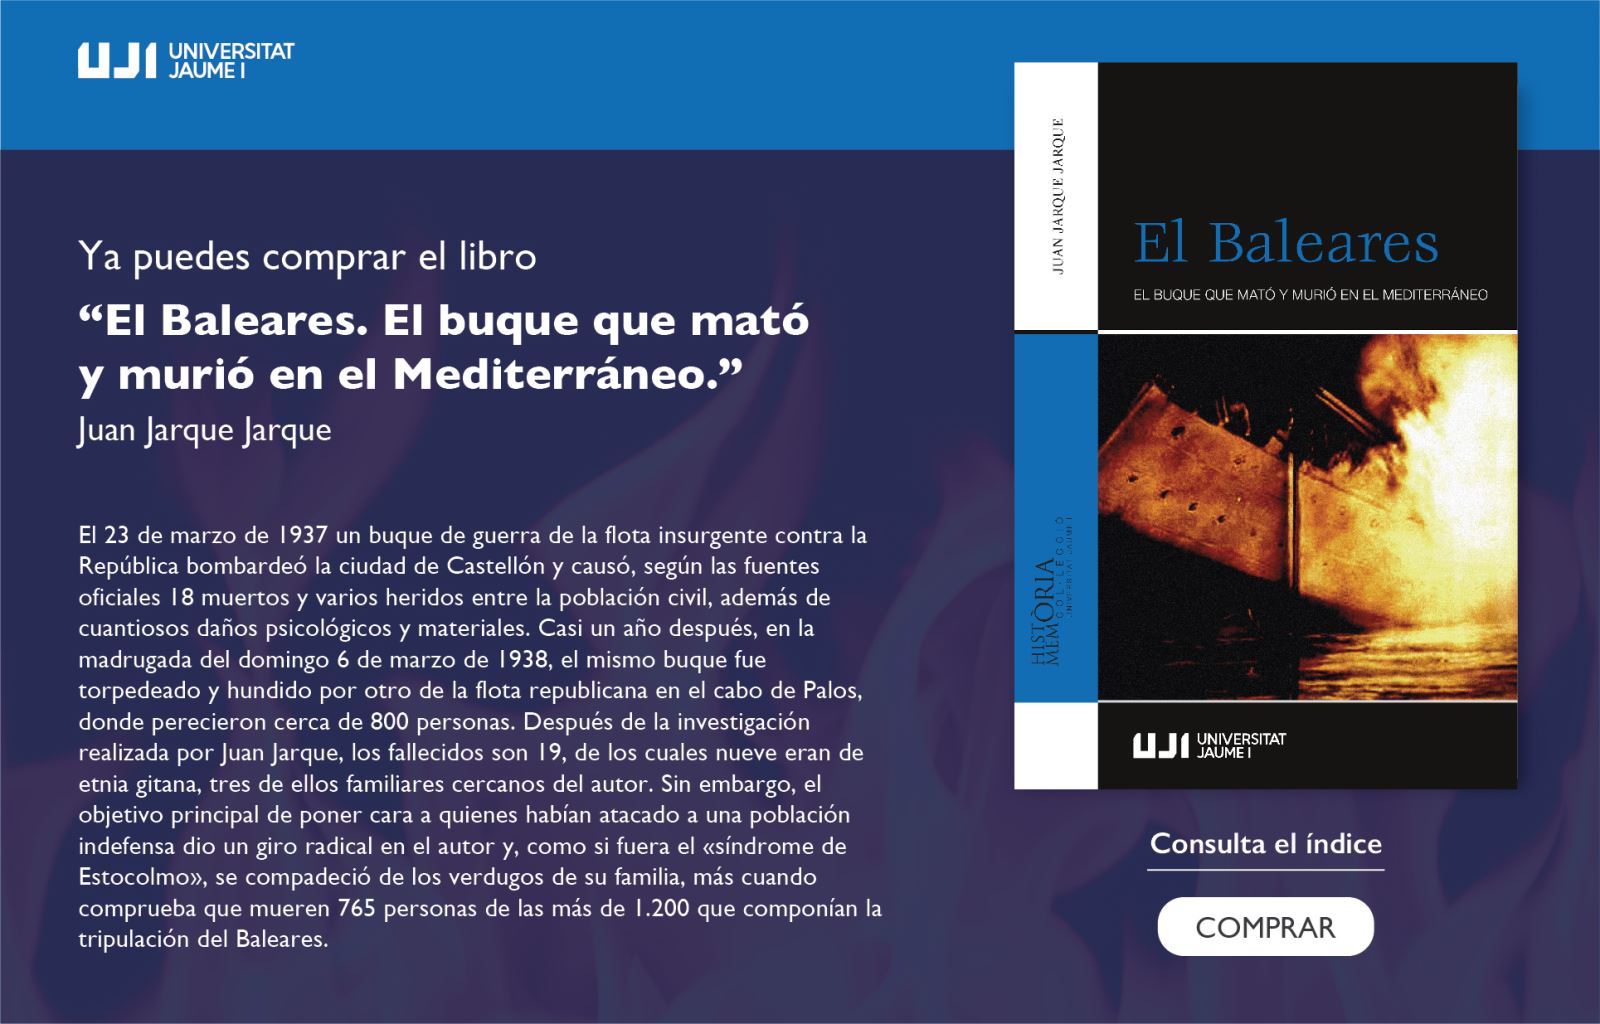 La Universitat Jaume I publica "El Baleares. El buque que mató y murió en el Mediterráneo."